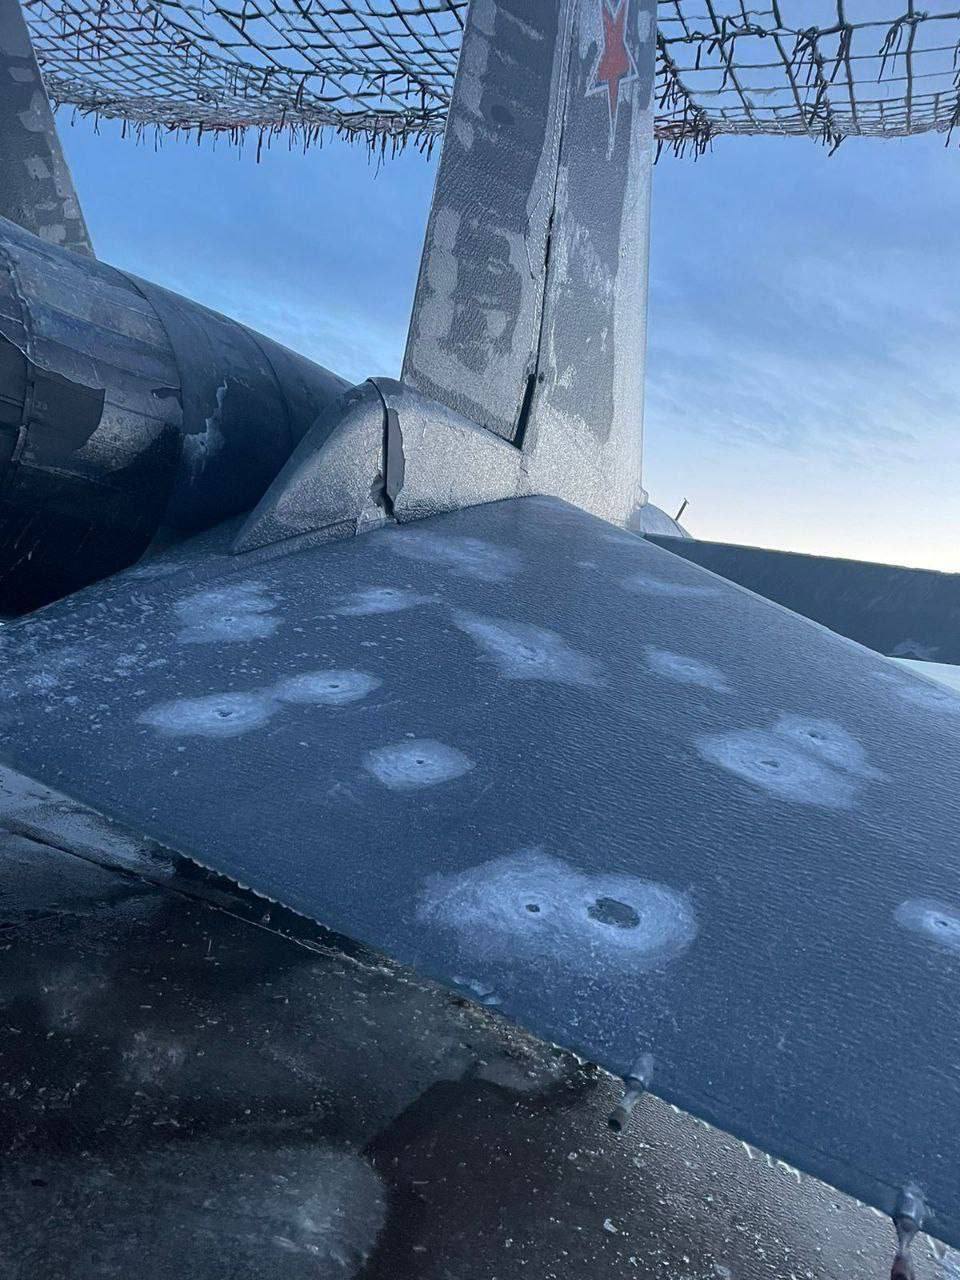 Не подлежат ремонту: стало известно, сколько российских Су-34 поразили украинские дроны на аэродроме "Морозовск"